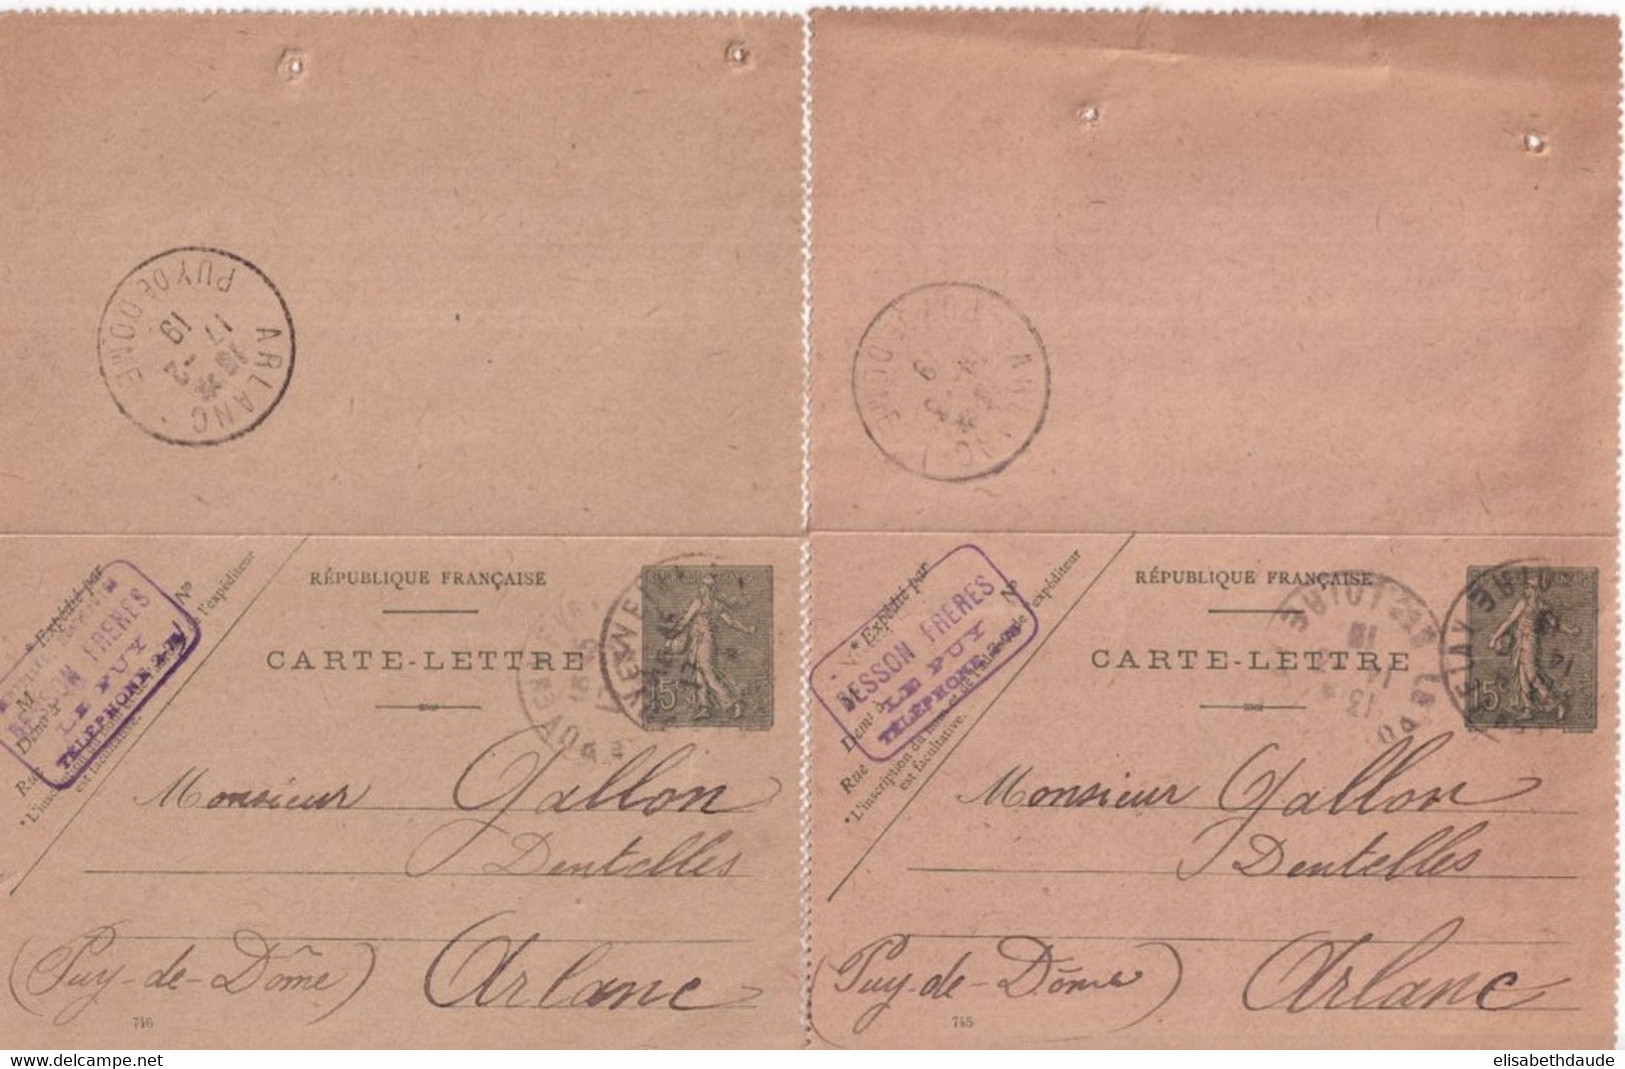 SEMEUSE LIGNEE - 1919 -  2 CARTE-LETTRES ENTIER DATE 745+746 (TEINTES DIFFERENTES) De LE PUY => ARLANC - Cartes-lettres